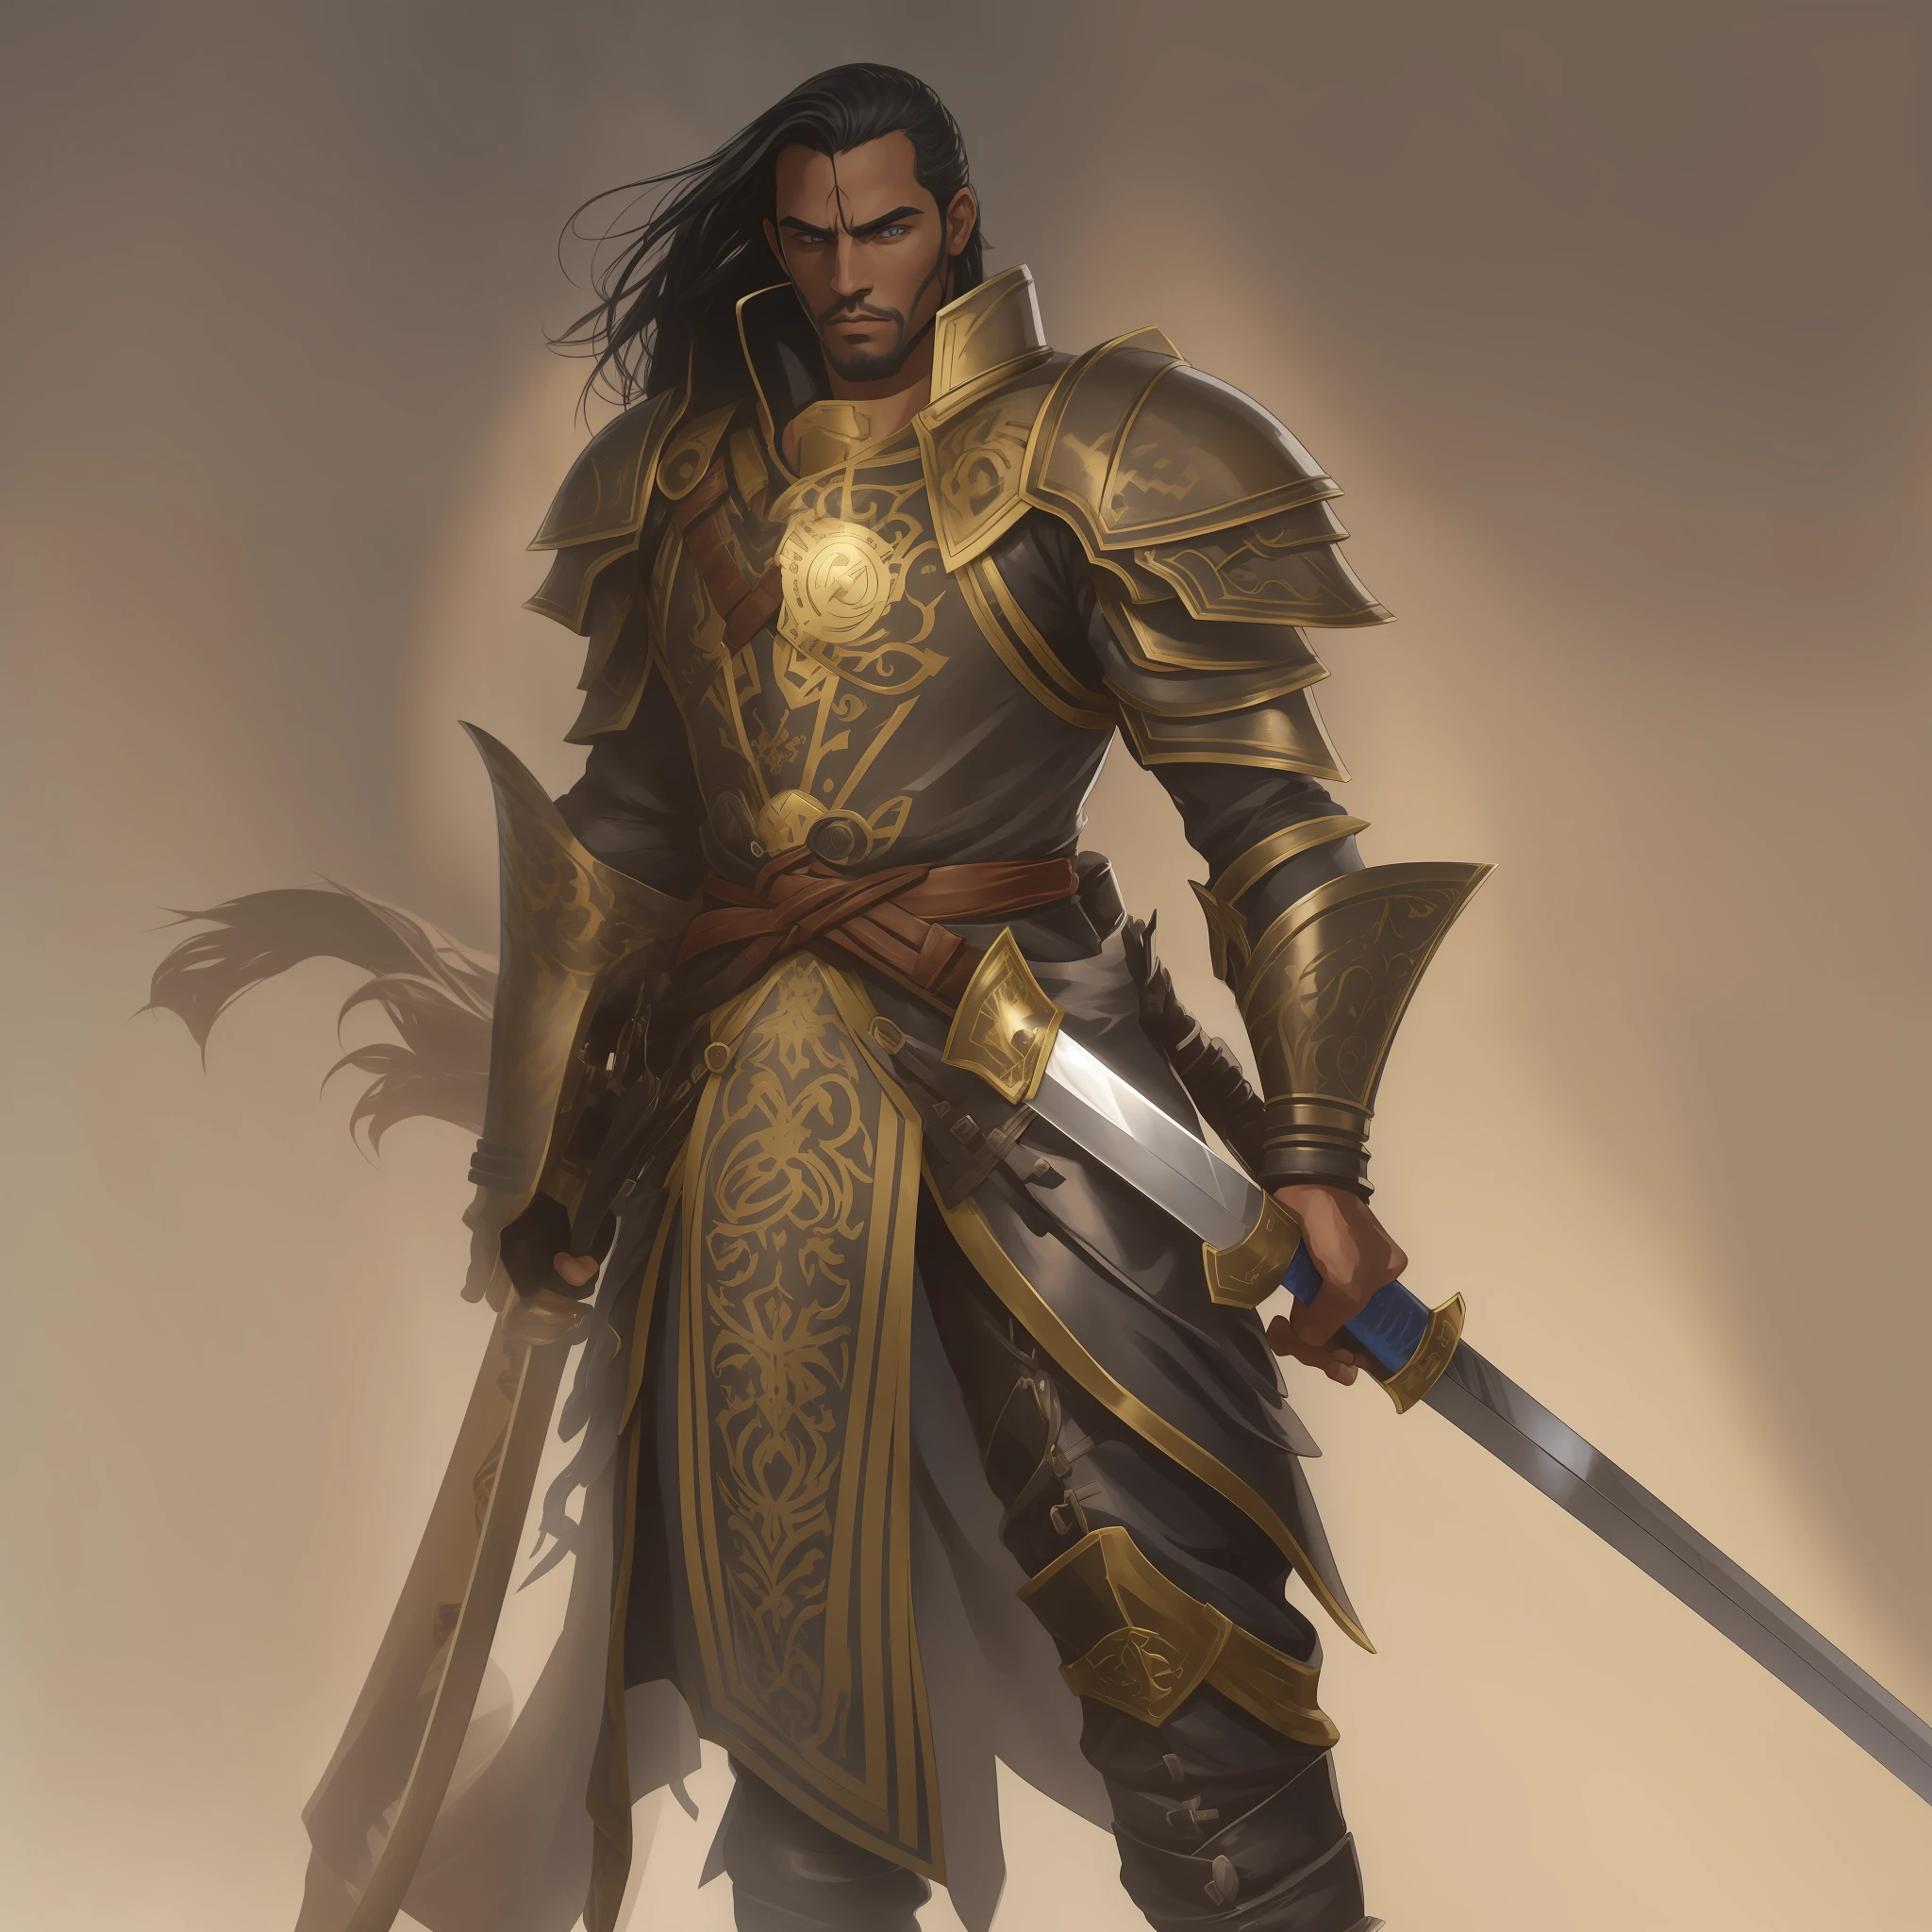 Charakter, ein Mann in einer glänzenden Kriegsrüstung, hält ein zweihändiges Langschwert , ein menschlicher männlicher Paladin, Fuso Rei Paladinbild, Paladino männlich, Goldener Paladin-Ritter